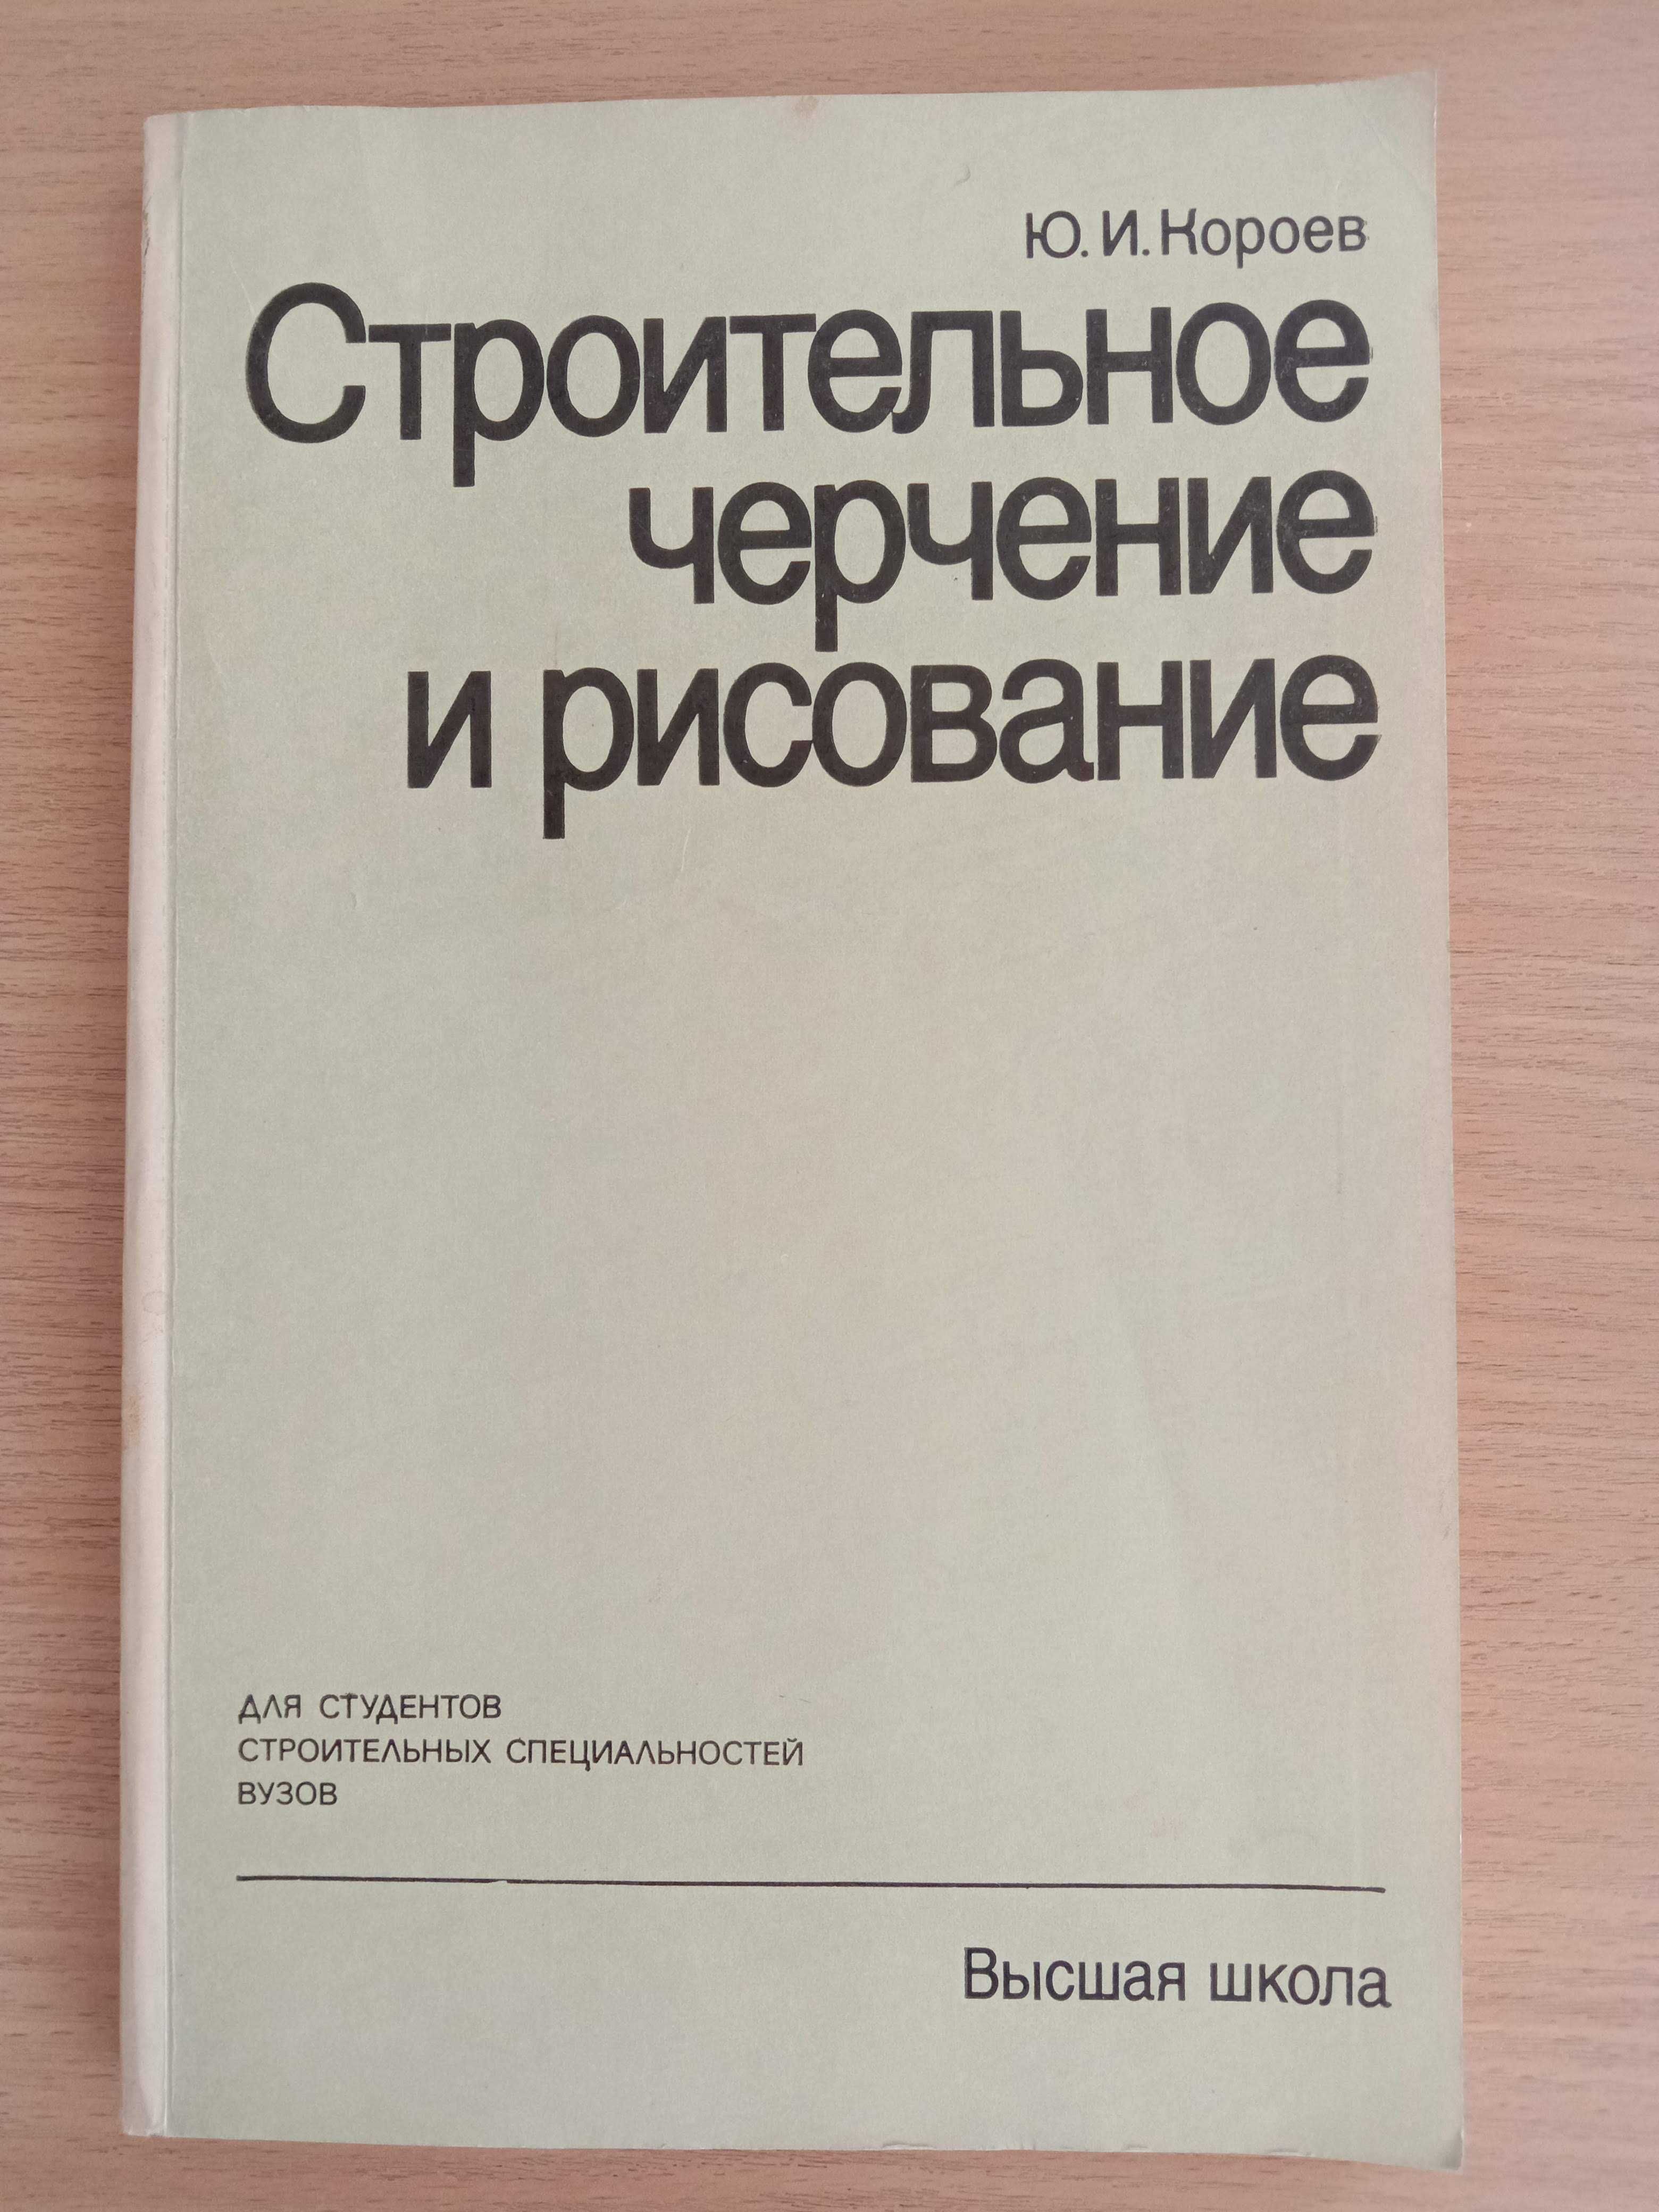 Книга «СТРОИТЕЛЬНОЕ ЧЕРЧЕНИЕ И РИСОВАНИЕ». Автор Короев Ю. И. – 1983г.